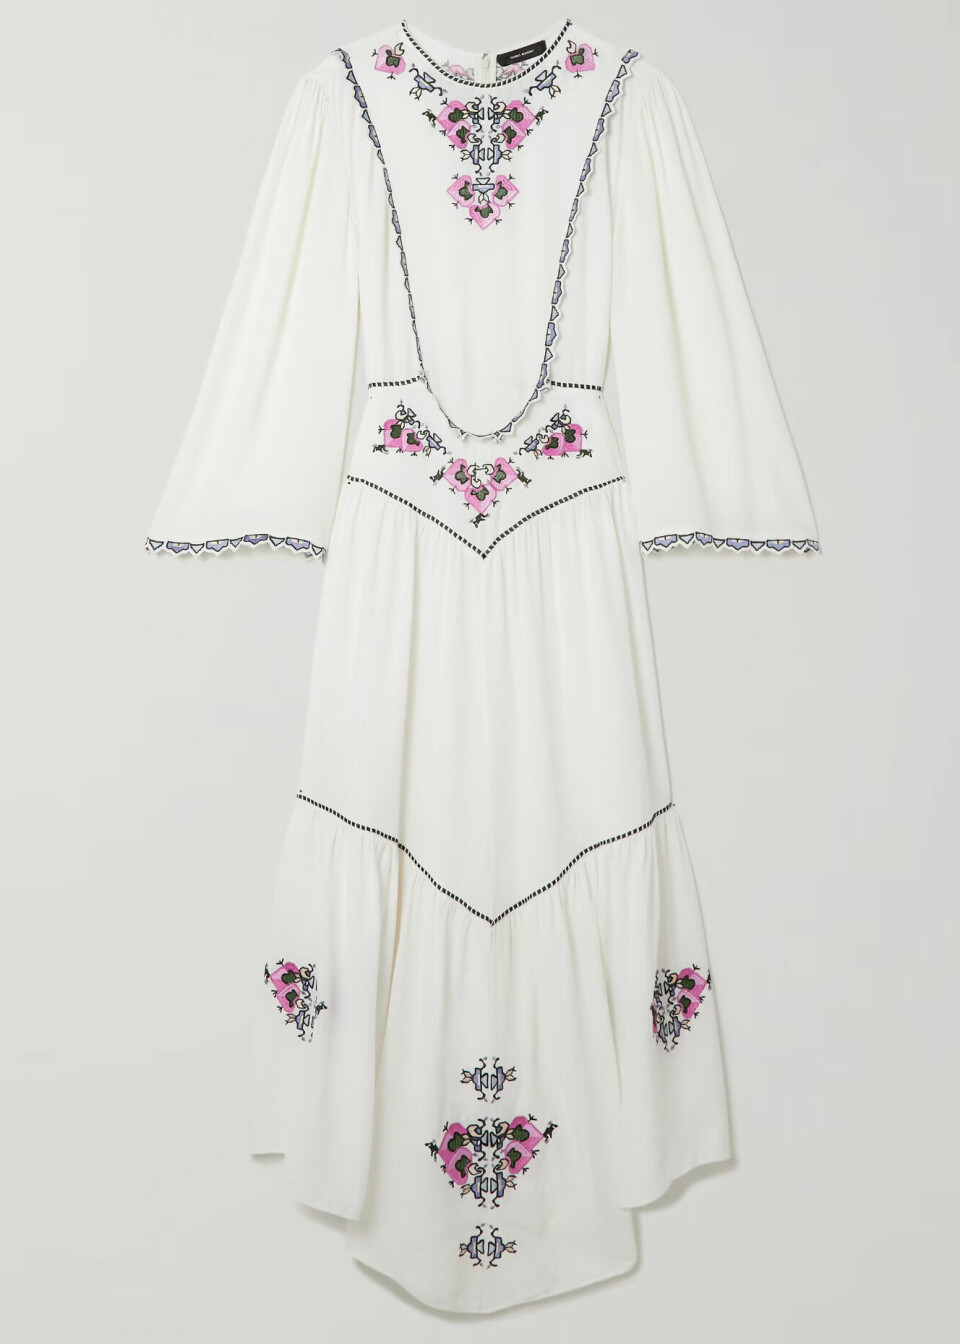 Kjole fra Isabel Marant/Net-a-porter, kr 14 270.